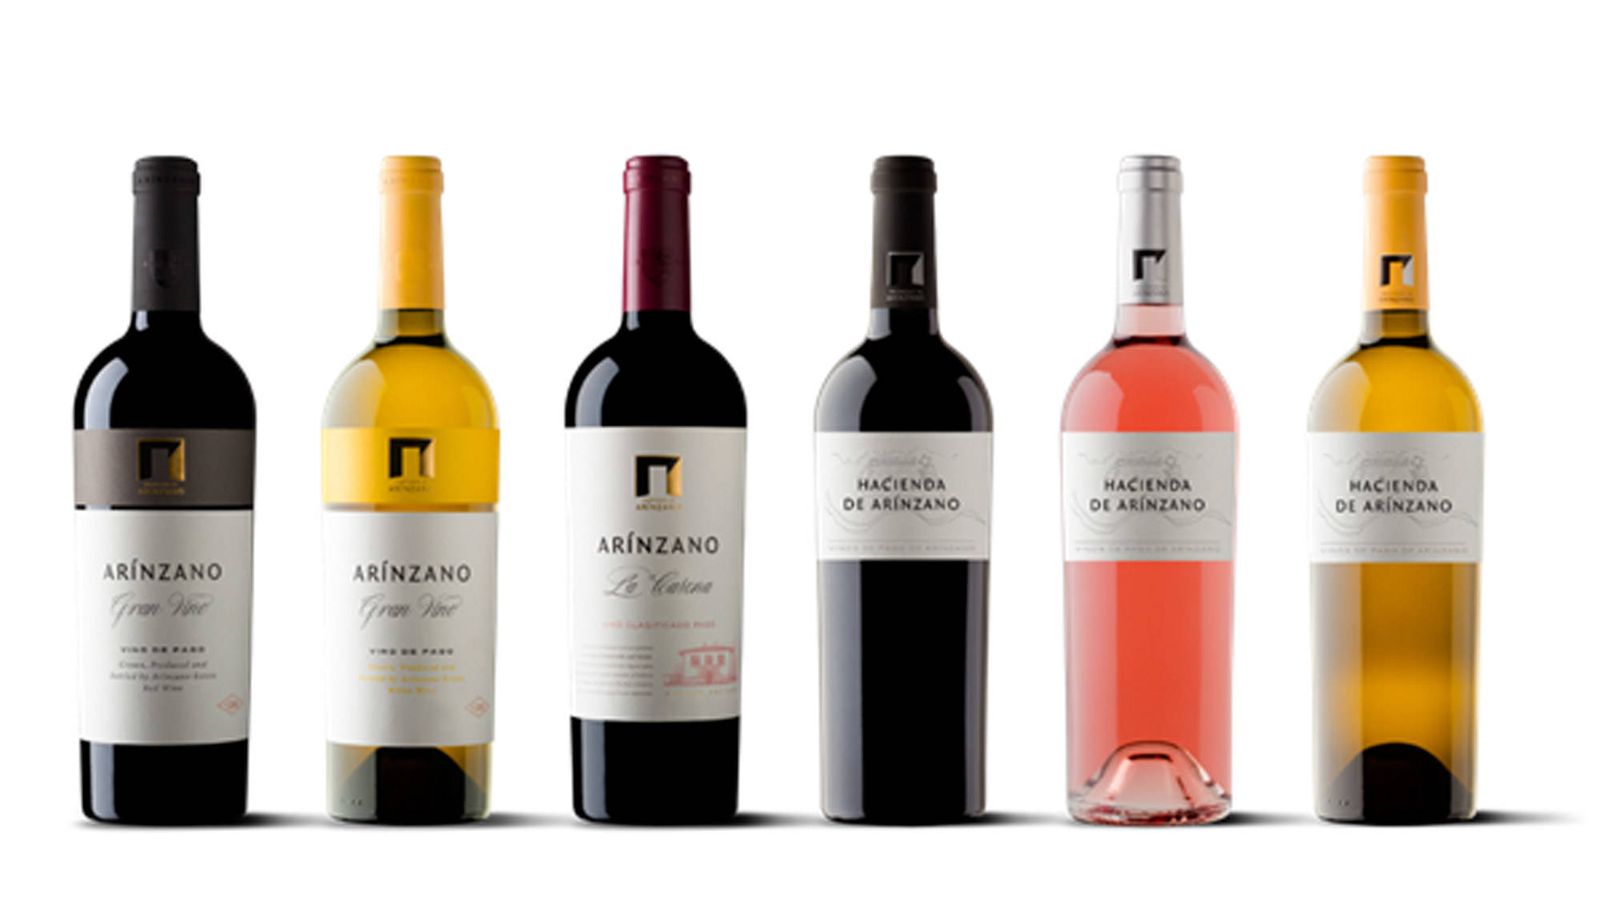 VARMA completa su porfolio de vinos con la distribución de Arínzano